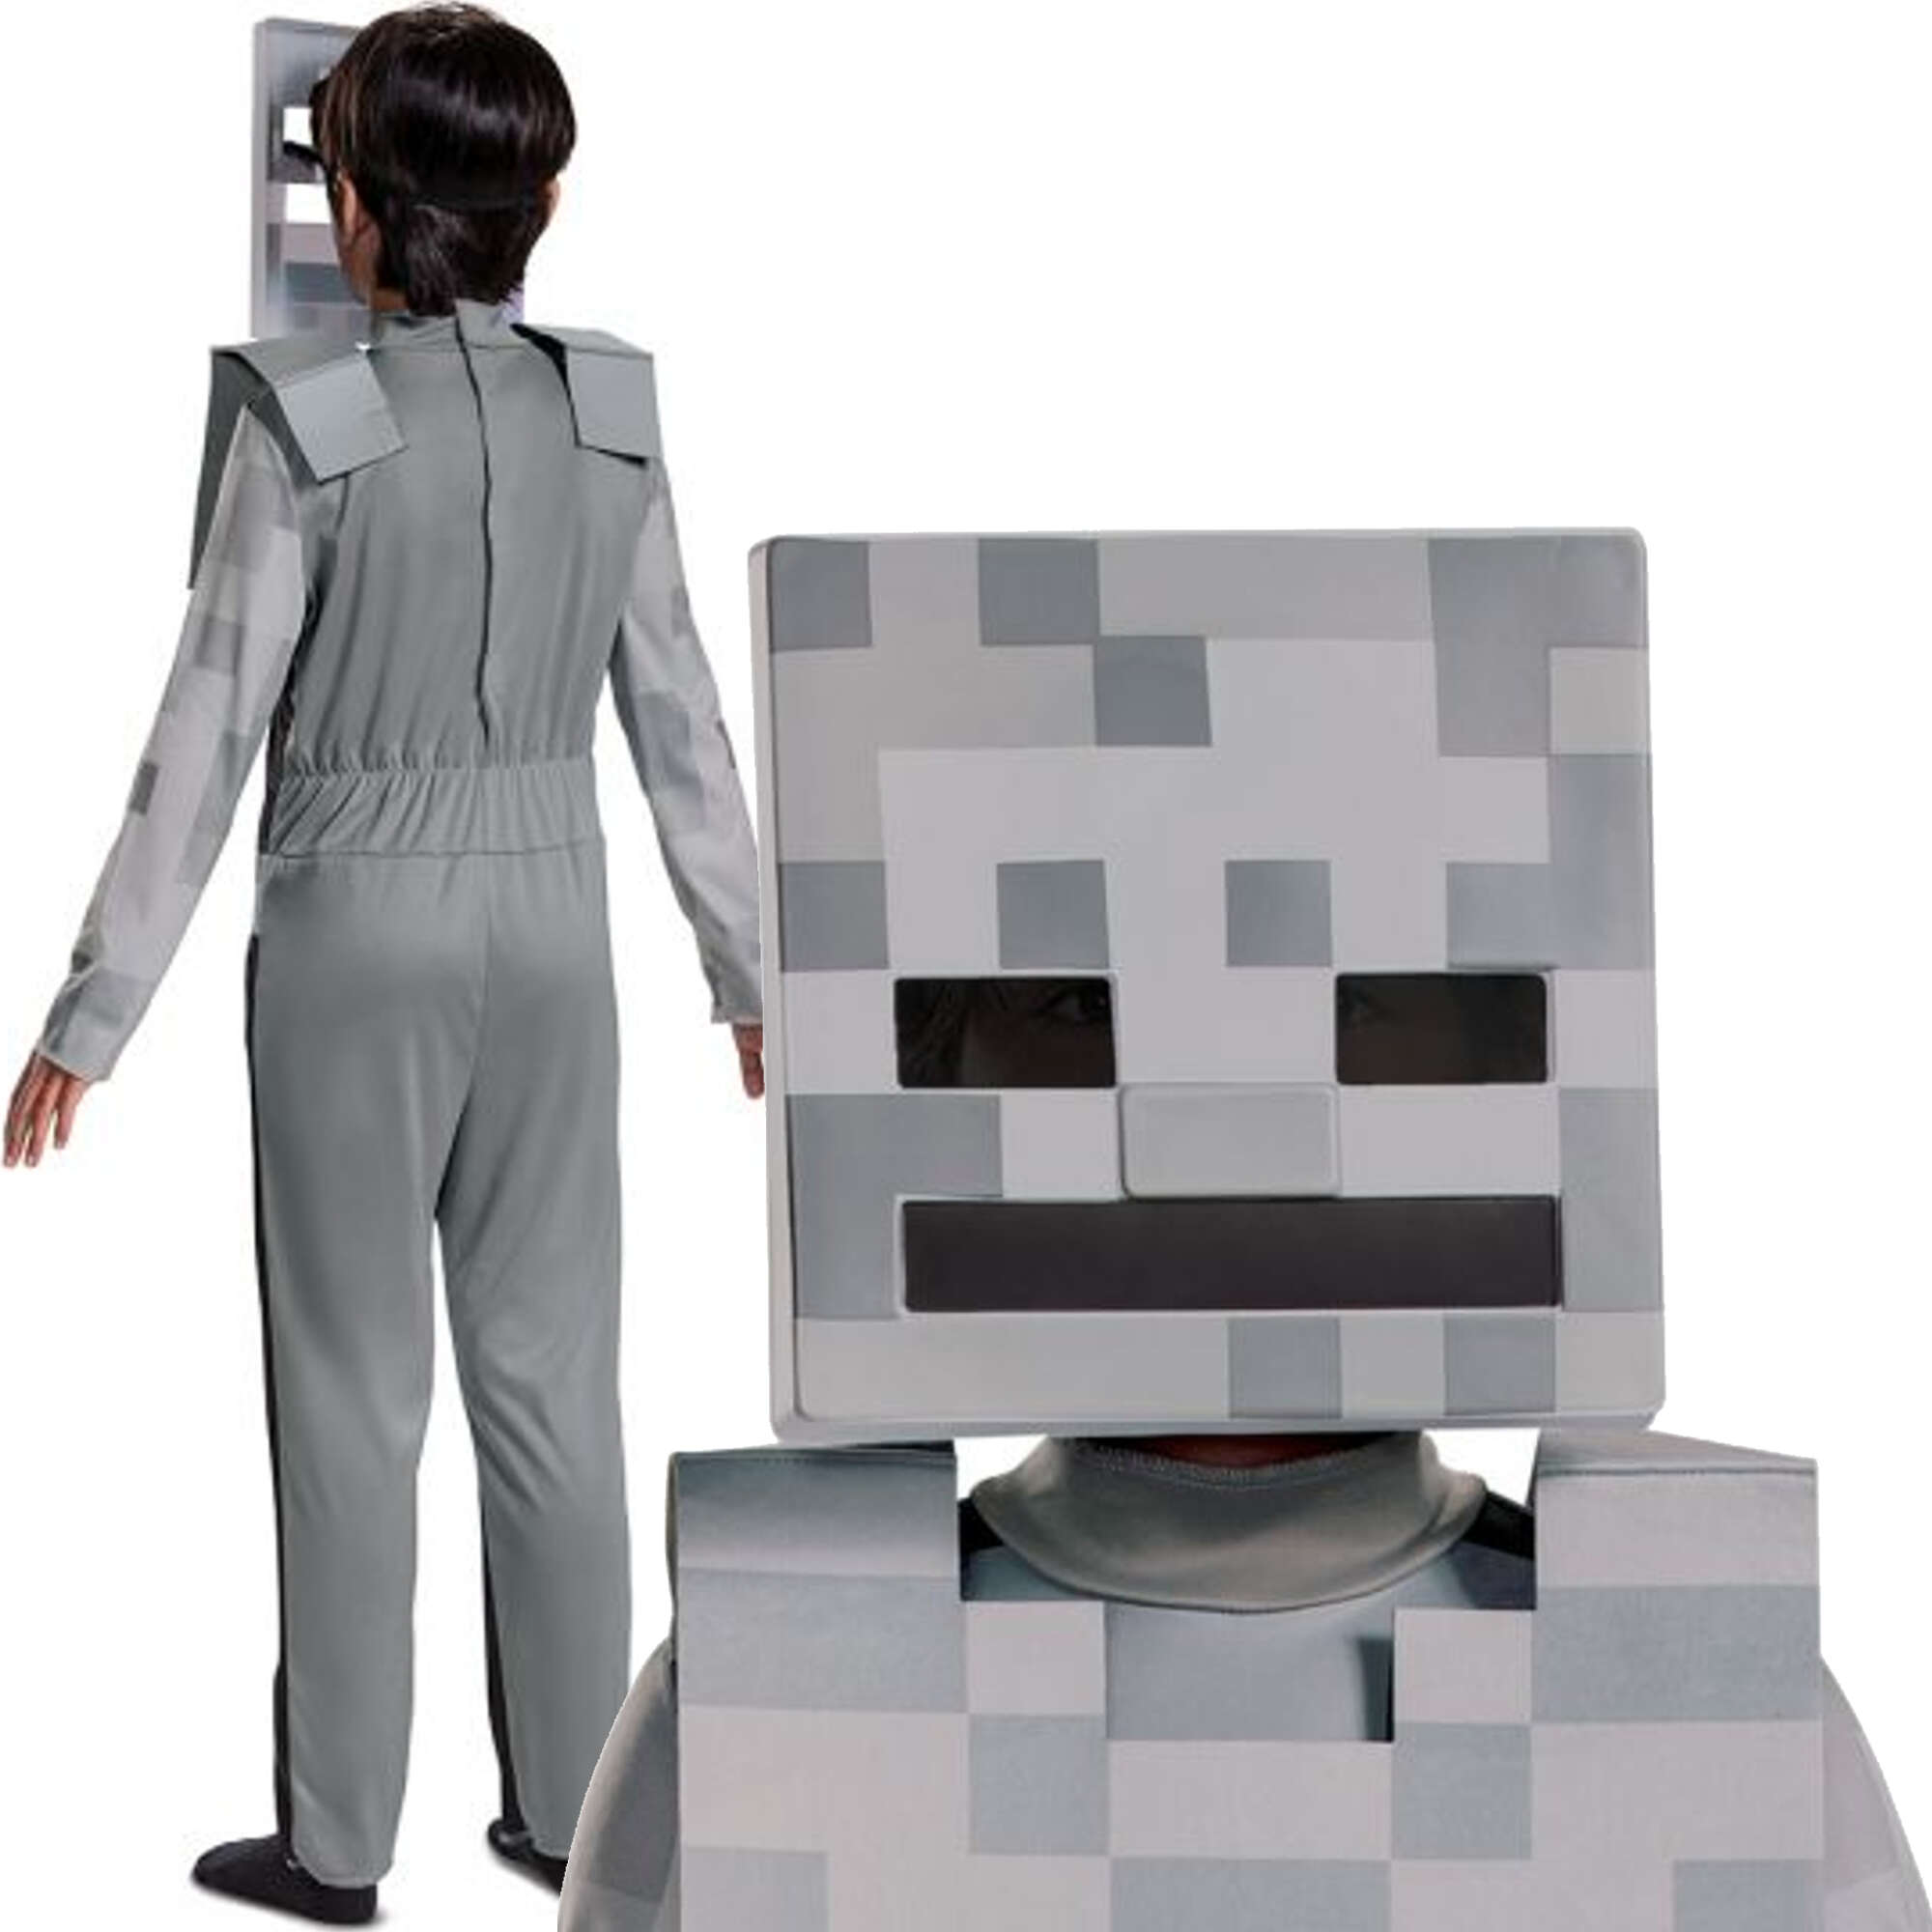 Minecraft strj karnawaowy dla chopca Skeleton Biay Szkielet kostium przebranie 110-122 cm (4-6 lat)